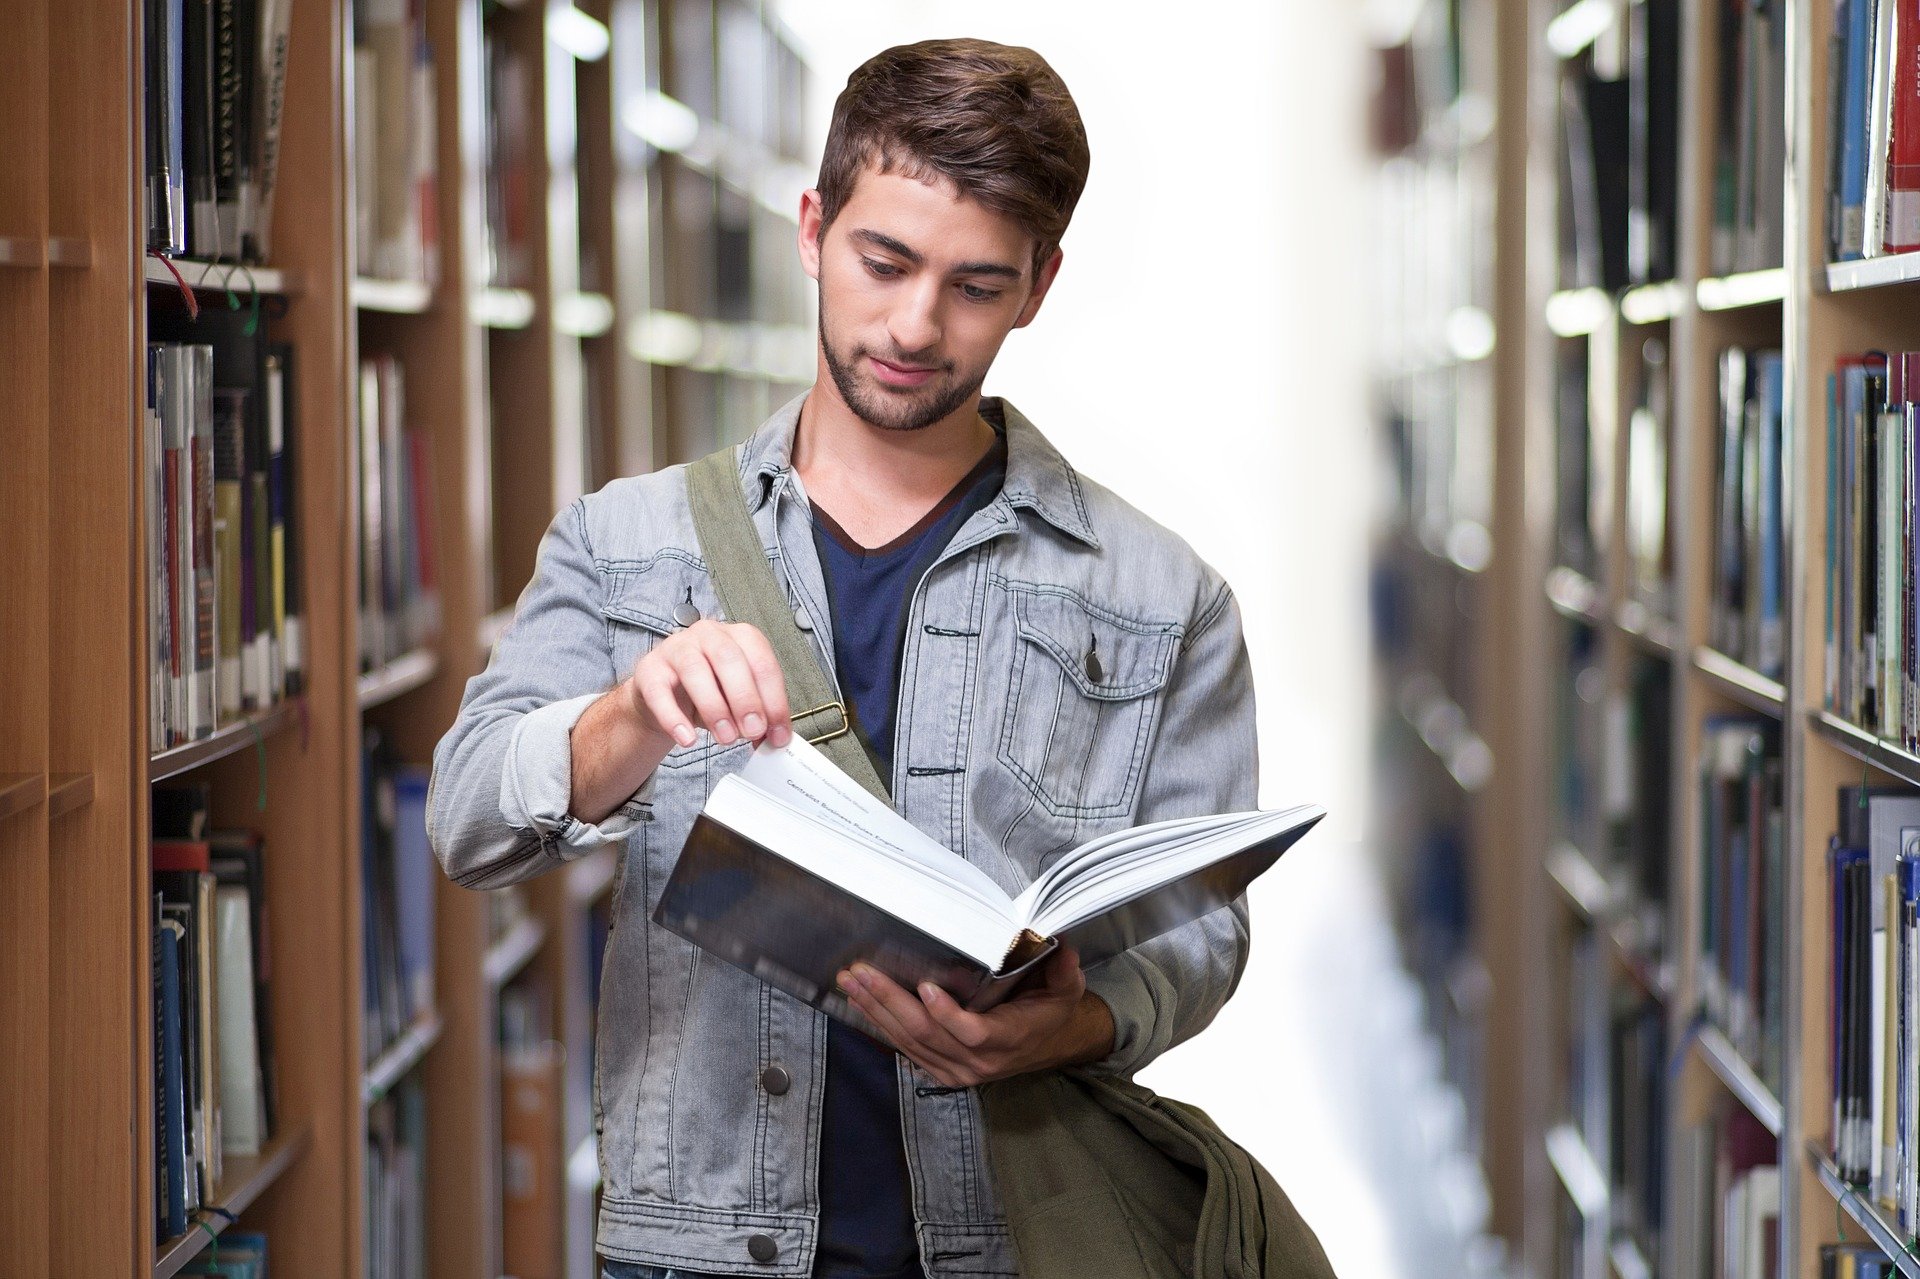 Ein Studierender steht in der Bibliothek zwischen Bücherregalen und blättert in einem Buch.